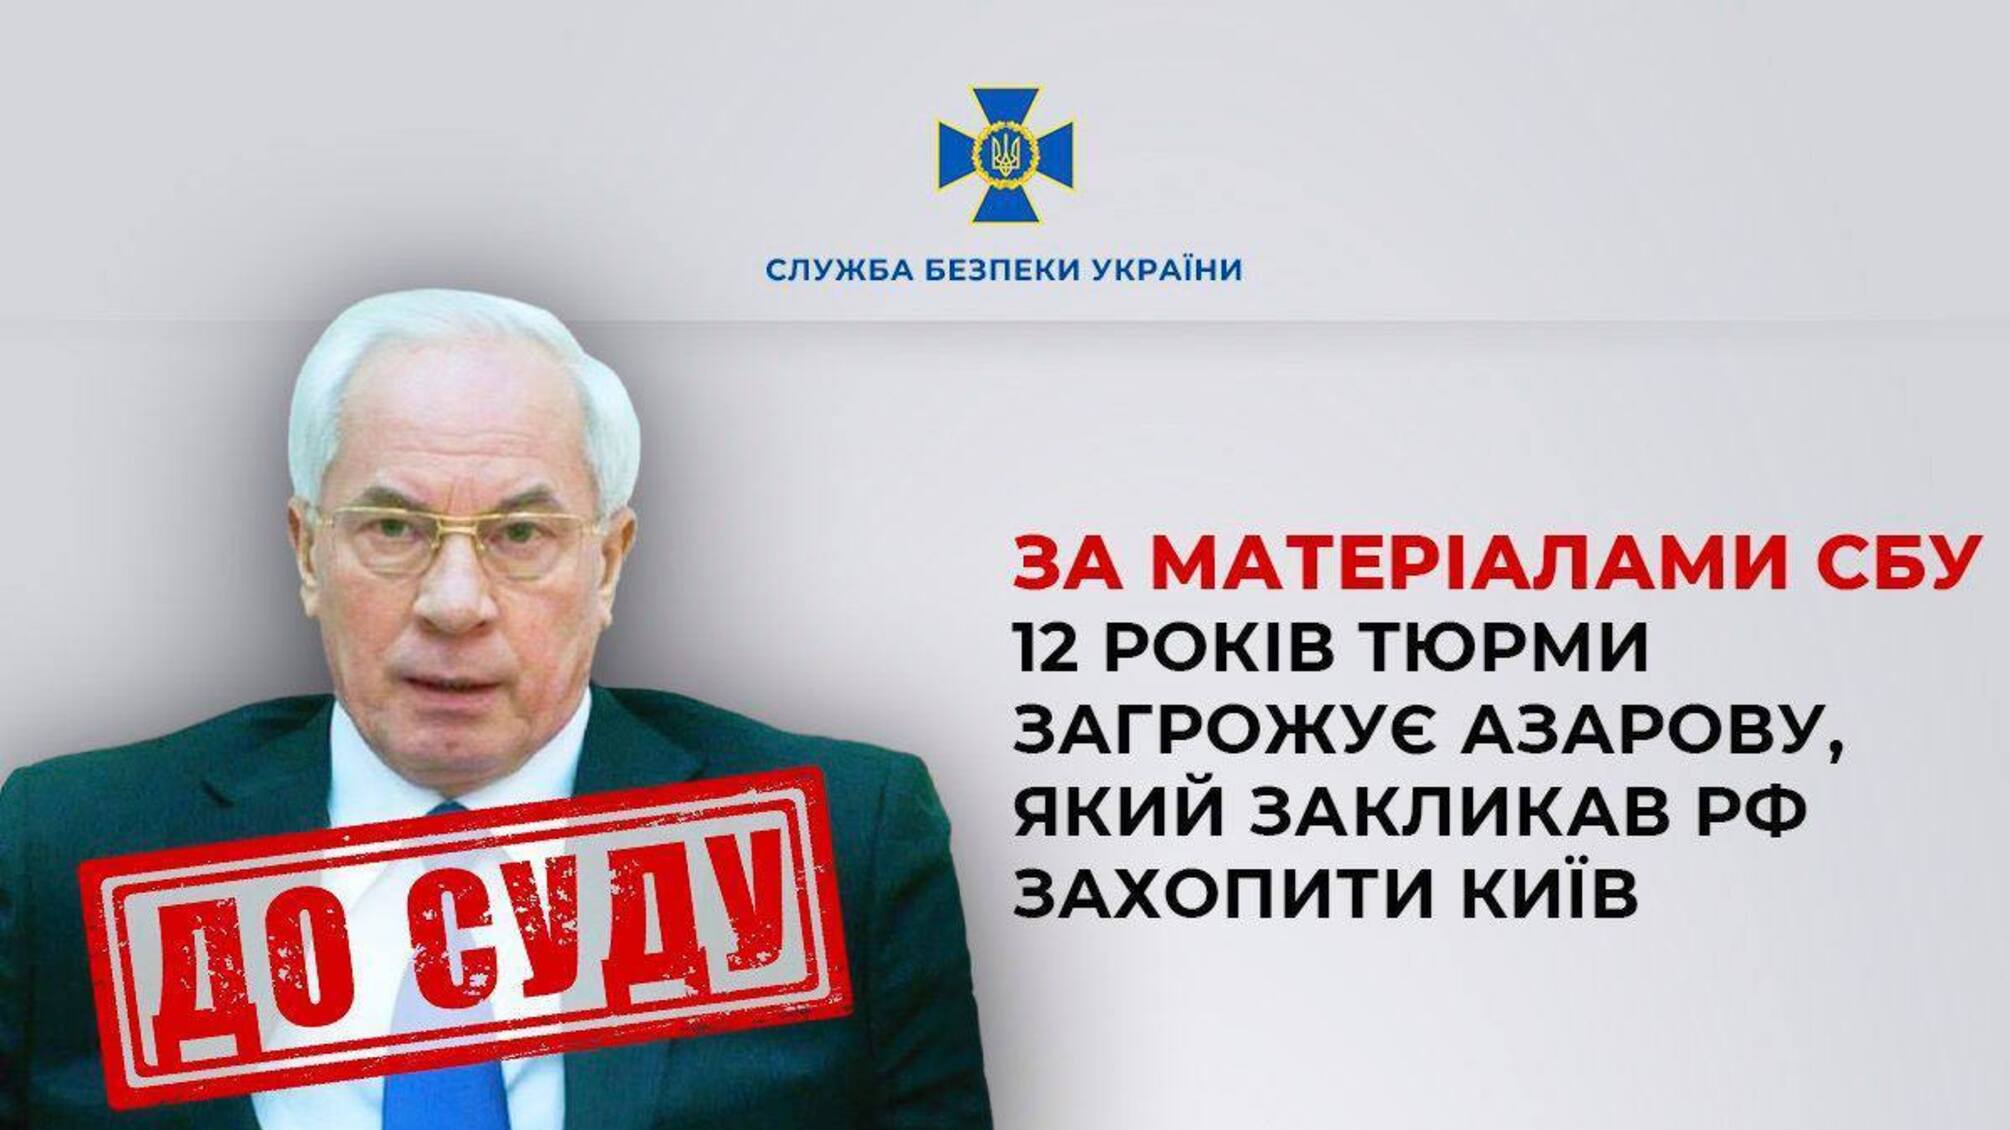 Экс-премьер Азаров призывал рф захватить Киев: ему грозит до 12 лет тюрьмы, – СБУ